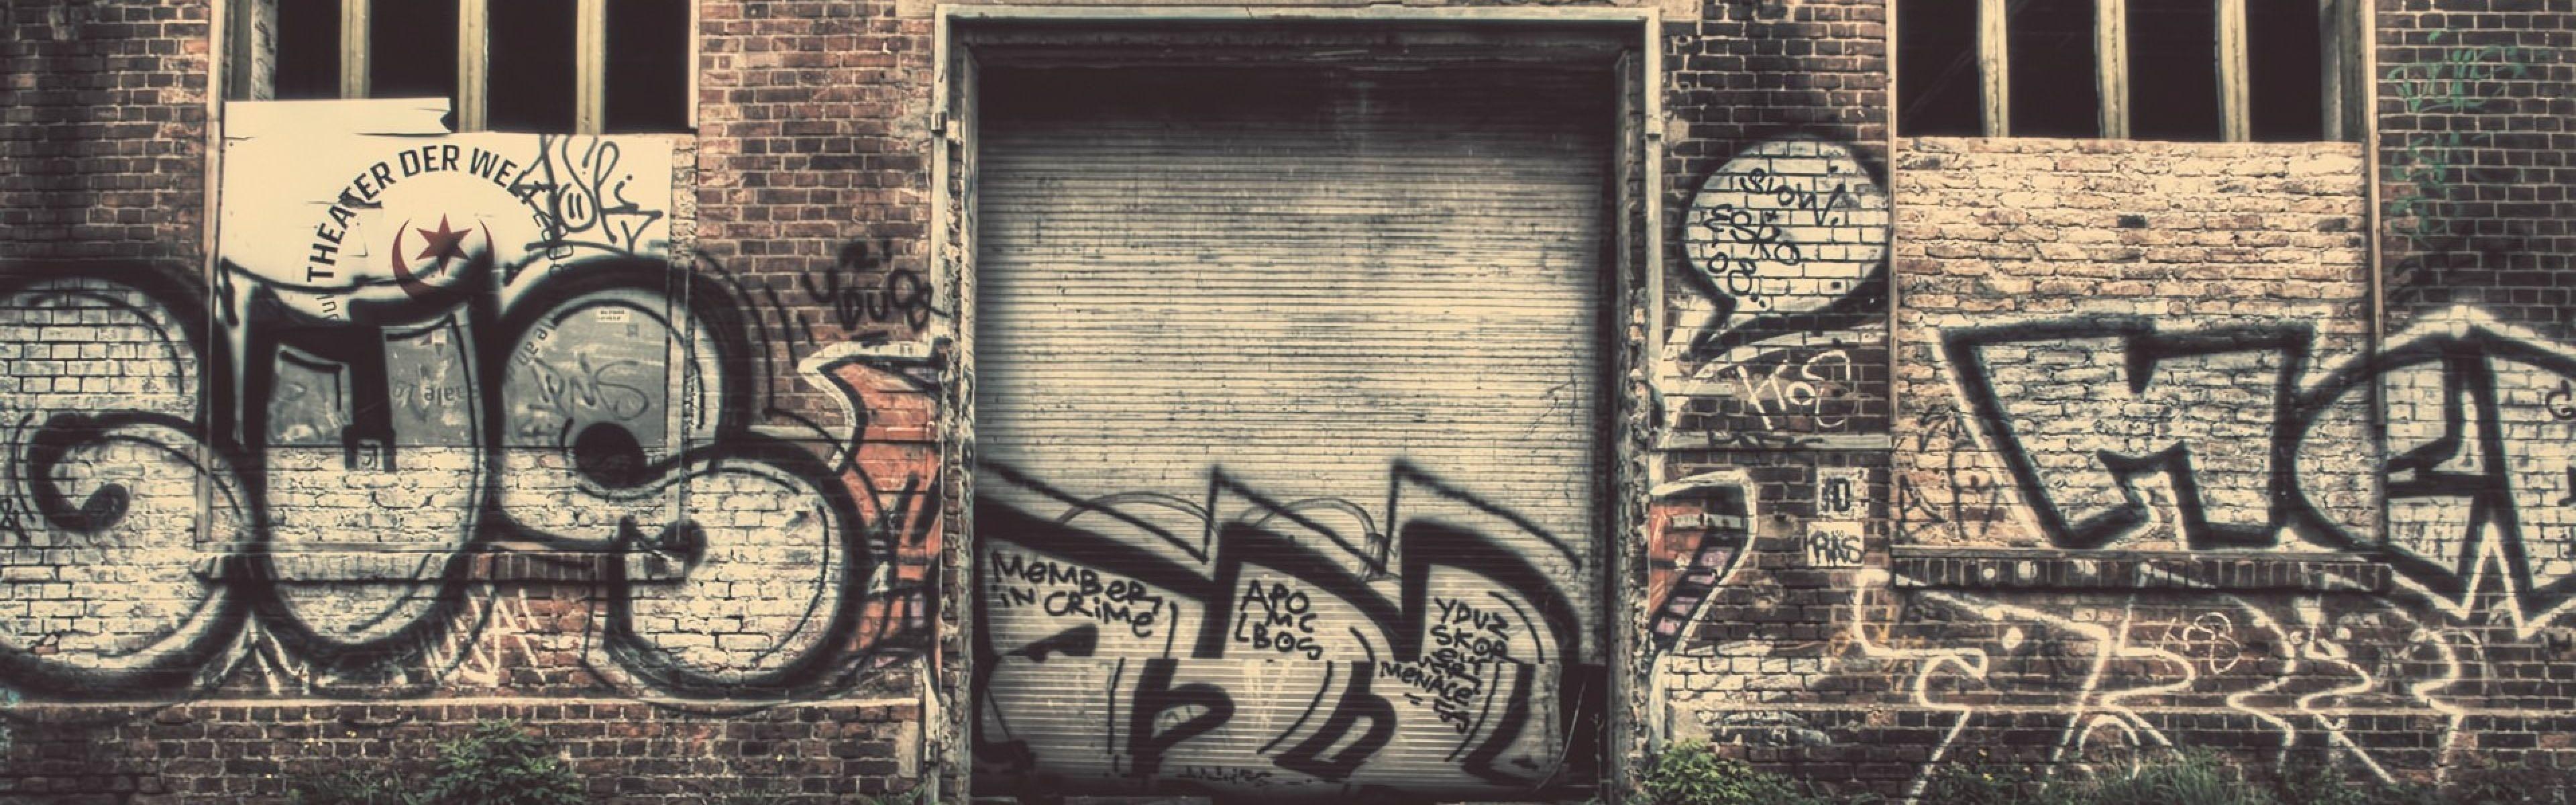 Граффити на старой кирпичной стене